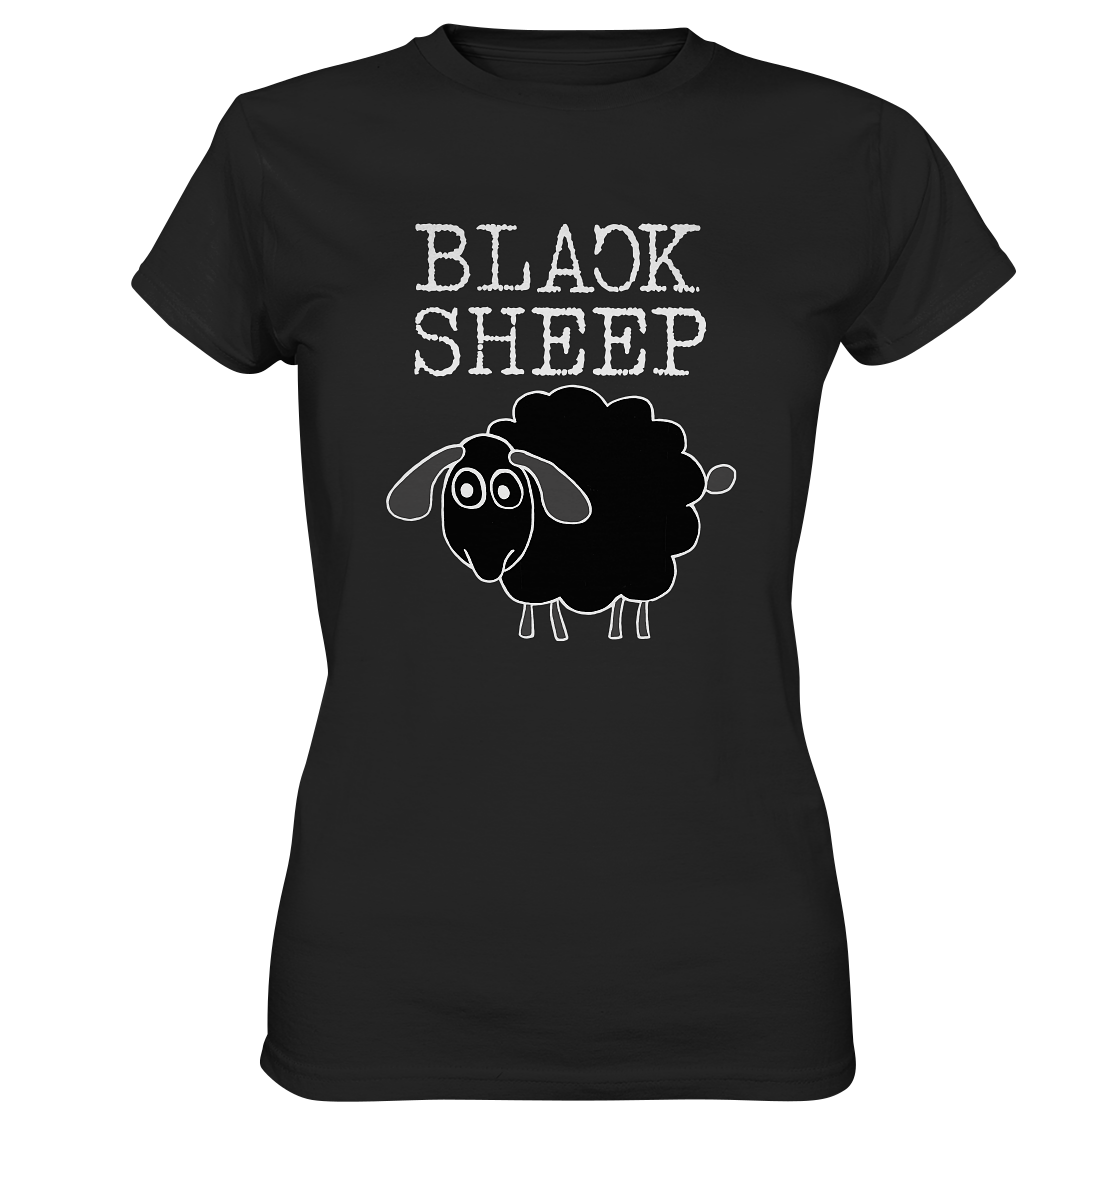 Black Sheep. Schwarzes Schaf - Ladies Premium Shirt